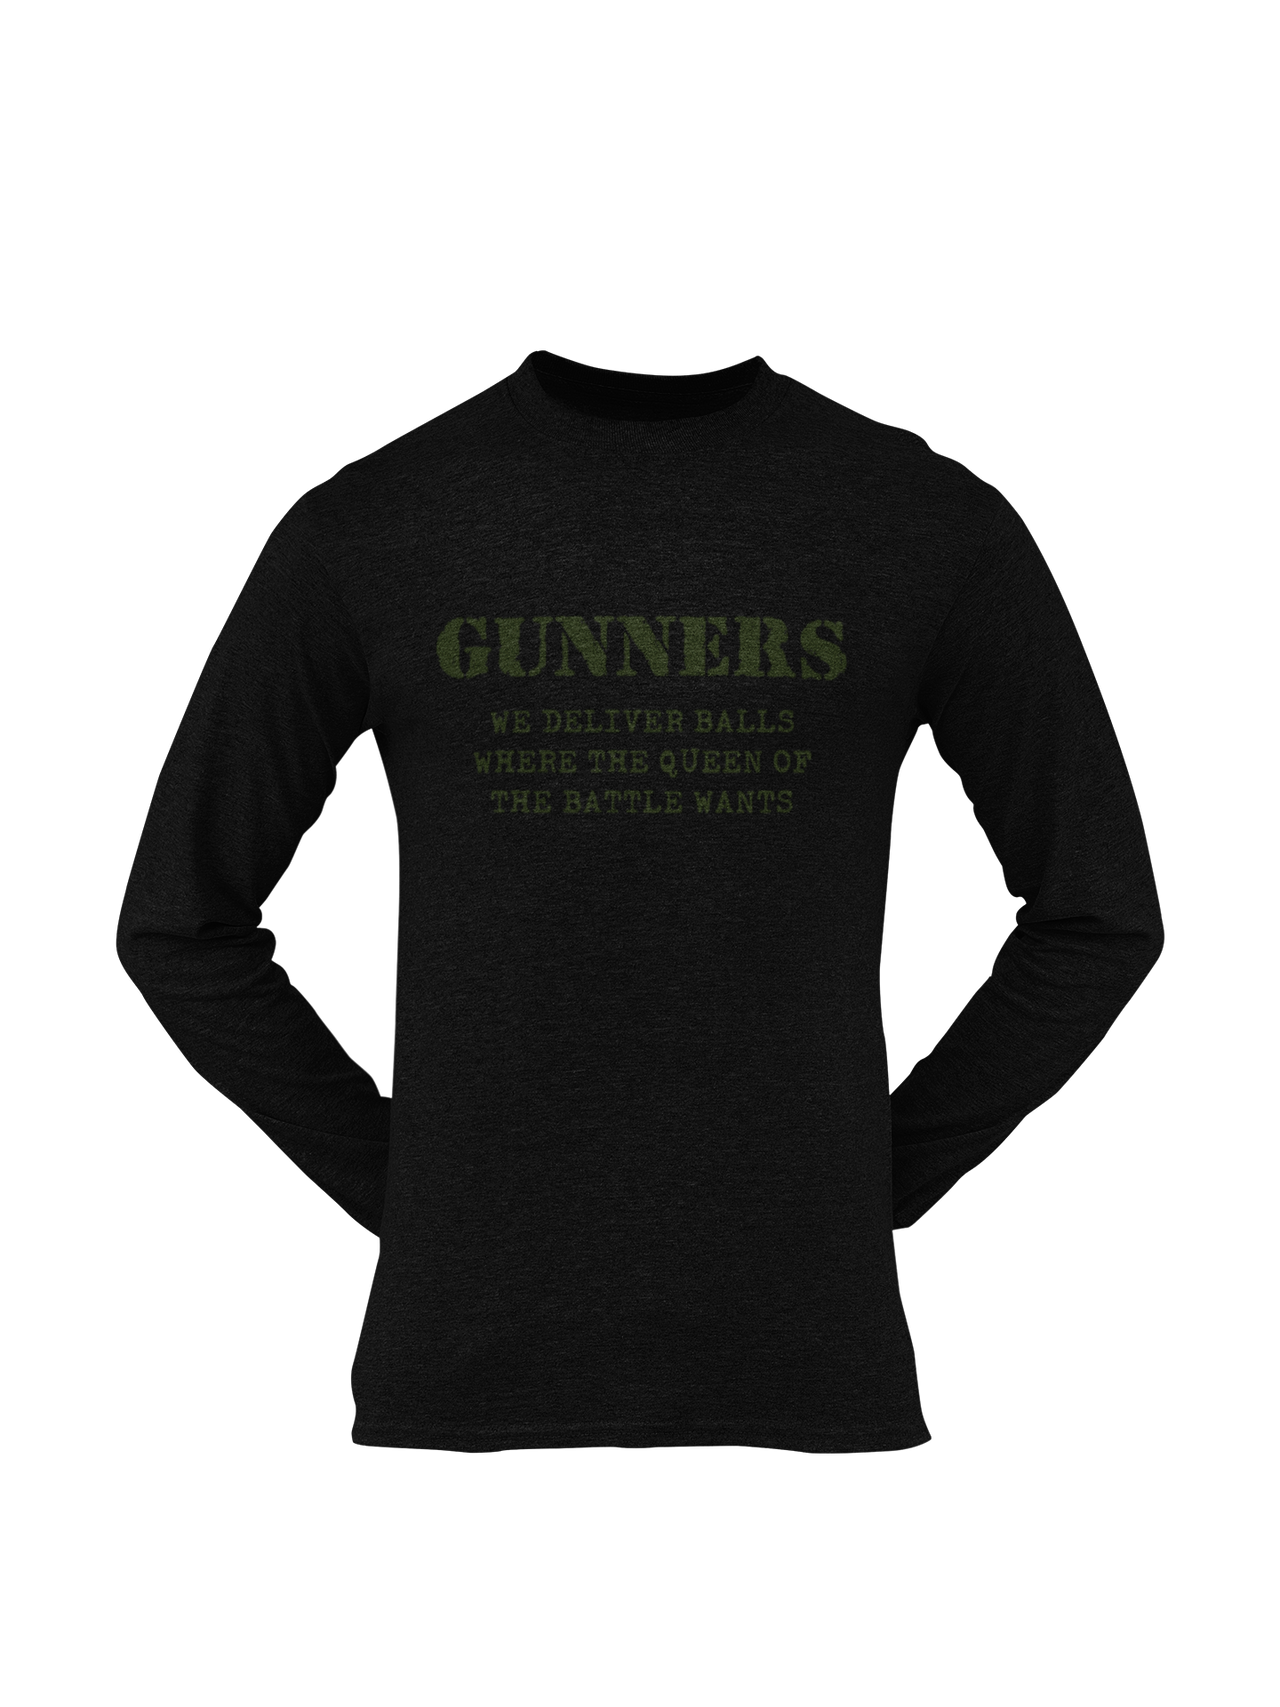 Gunner T-shirt - We Deliver Balls..... (Men)